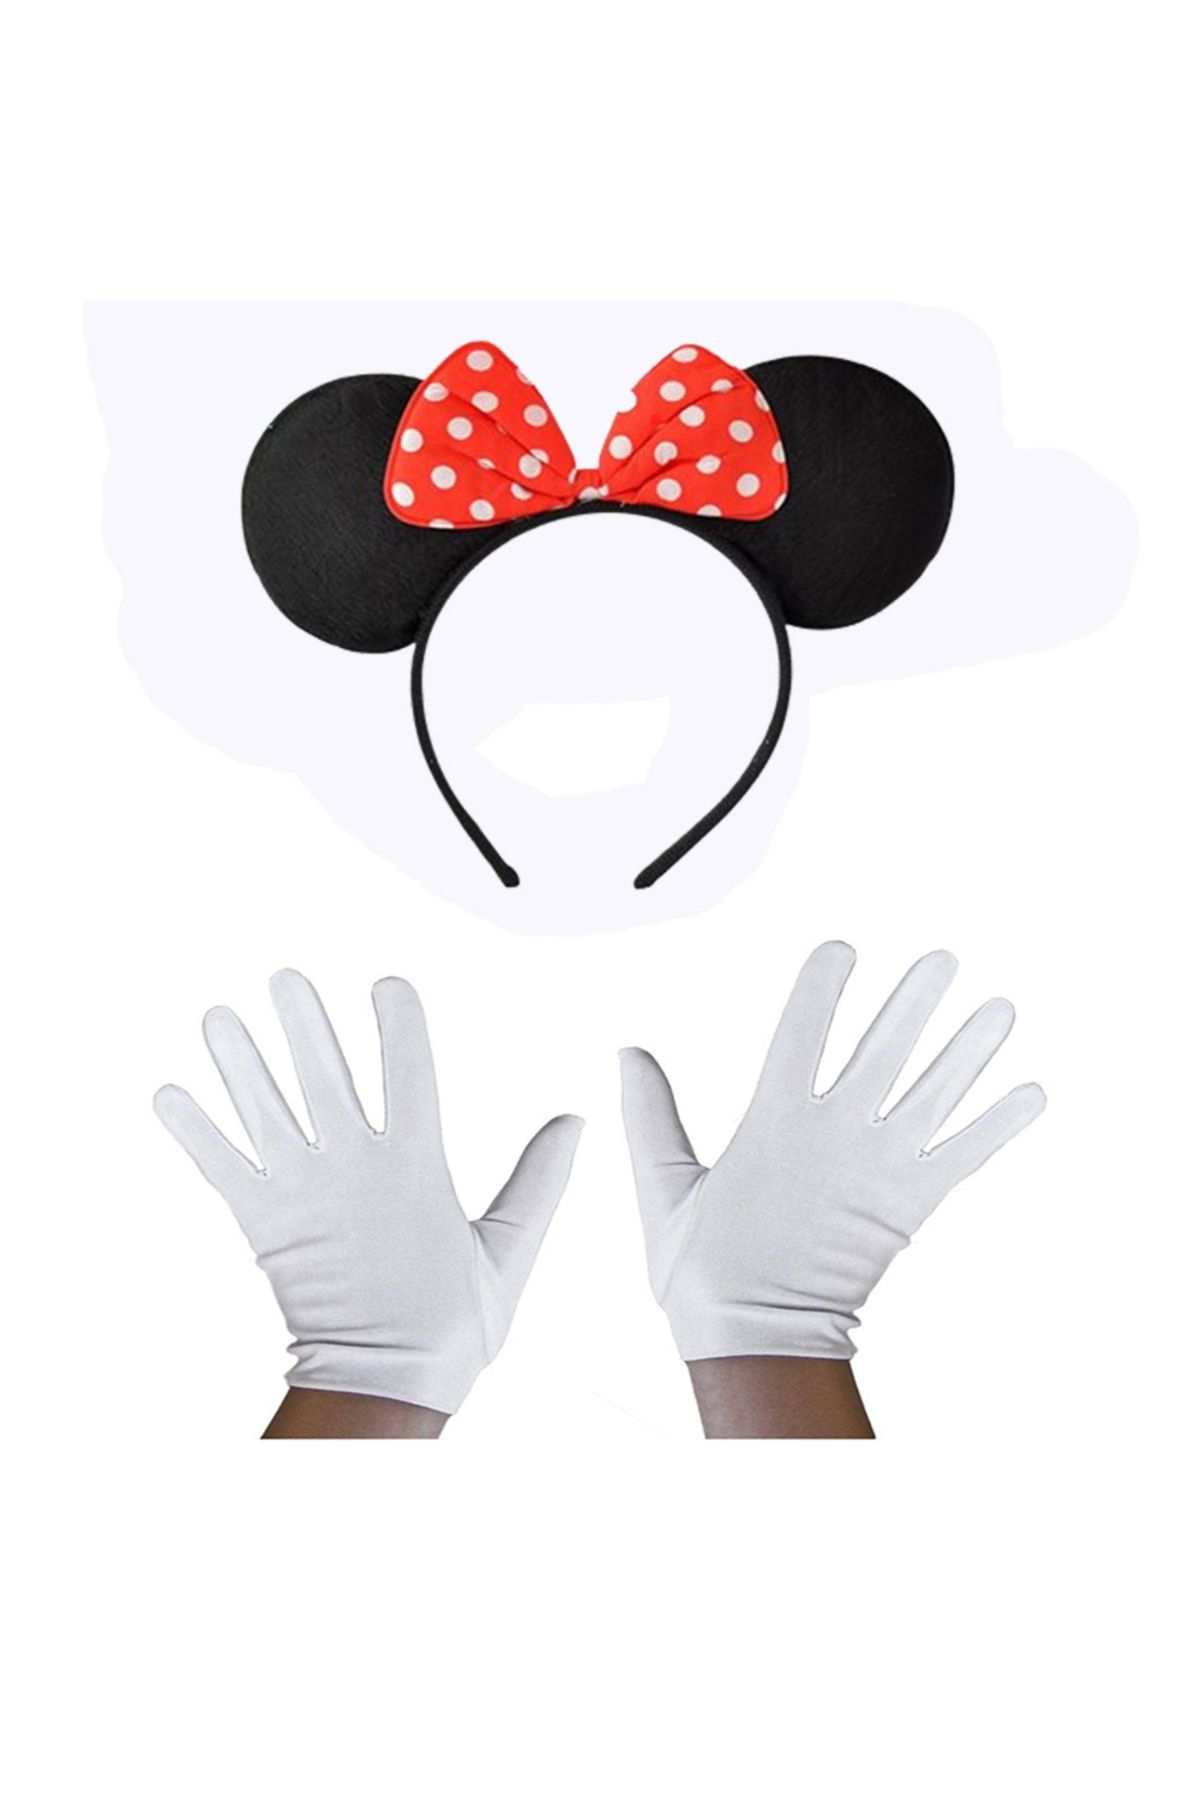 KAVACIK İTHALAT Kırmızı Fiyonklu Minnie Mouse Tacı ve Beyaz Eldiven Seti (4324)